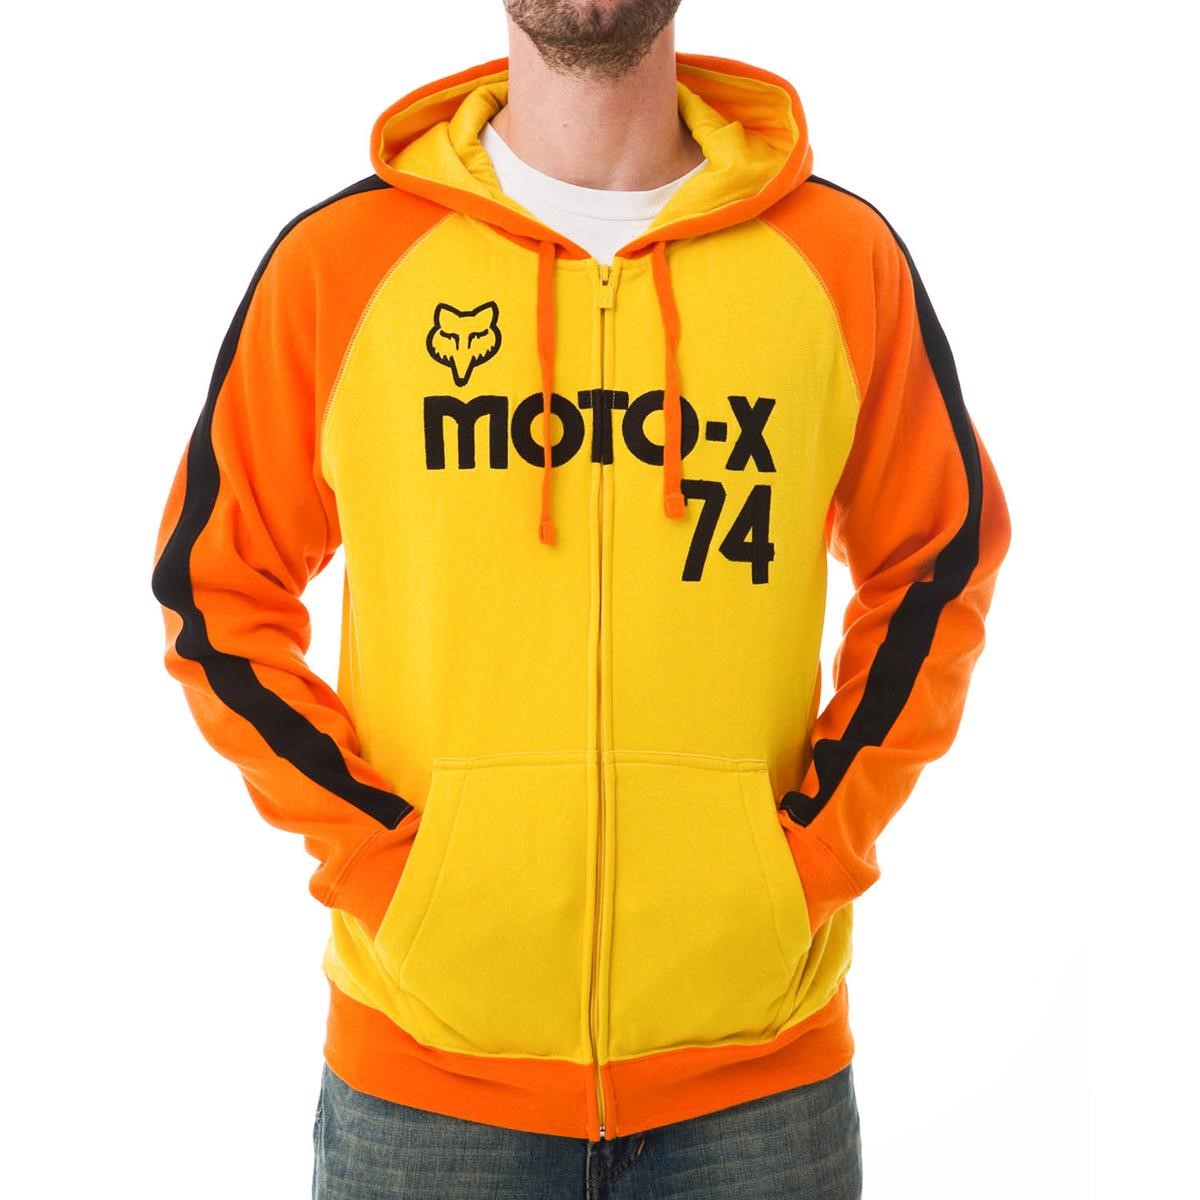 Freizeit/Streetwear Bekleidung-Hoodies - Fox Zip Hoody Moto-X Classic Combo Gold